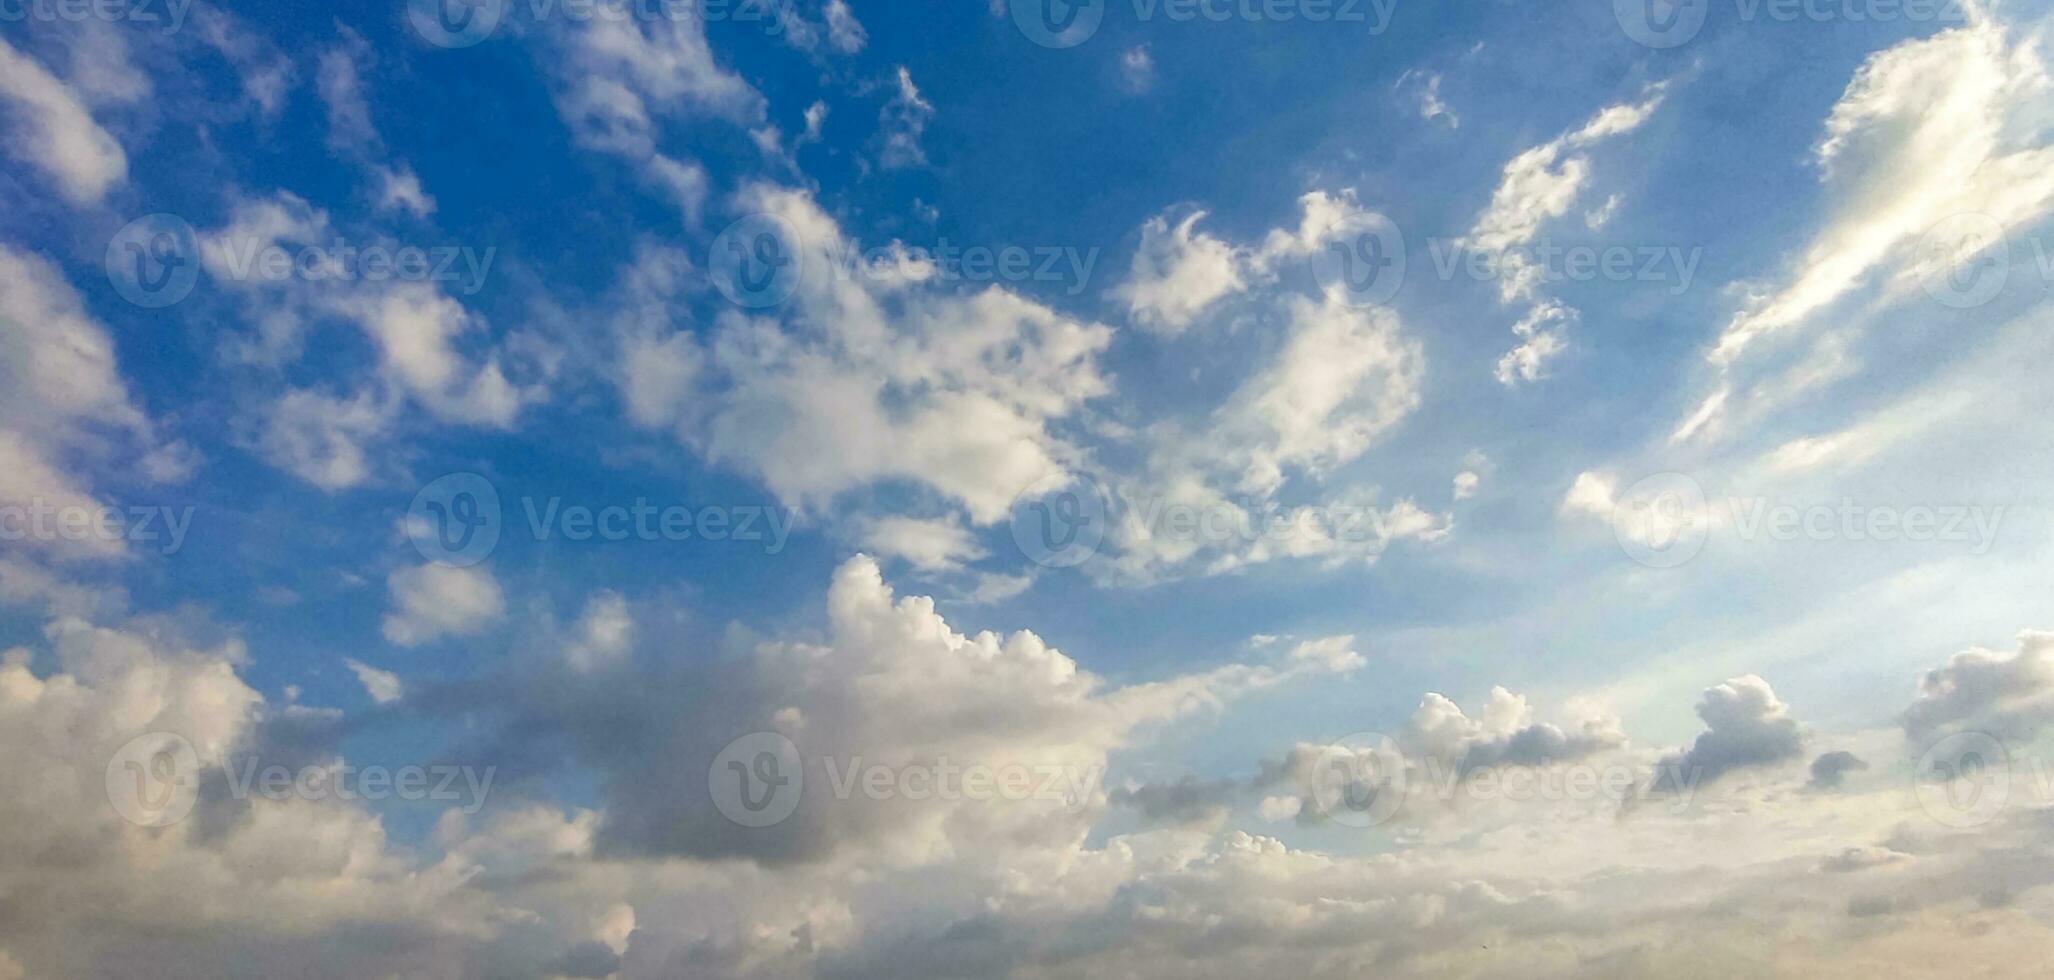 en blå himmel med moln och en få moln, blå himmel, vit moln tid upphöra av moln i de himmel, de Sol lyser genom de moln i detta Foto, dramatisk himmel moln foto